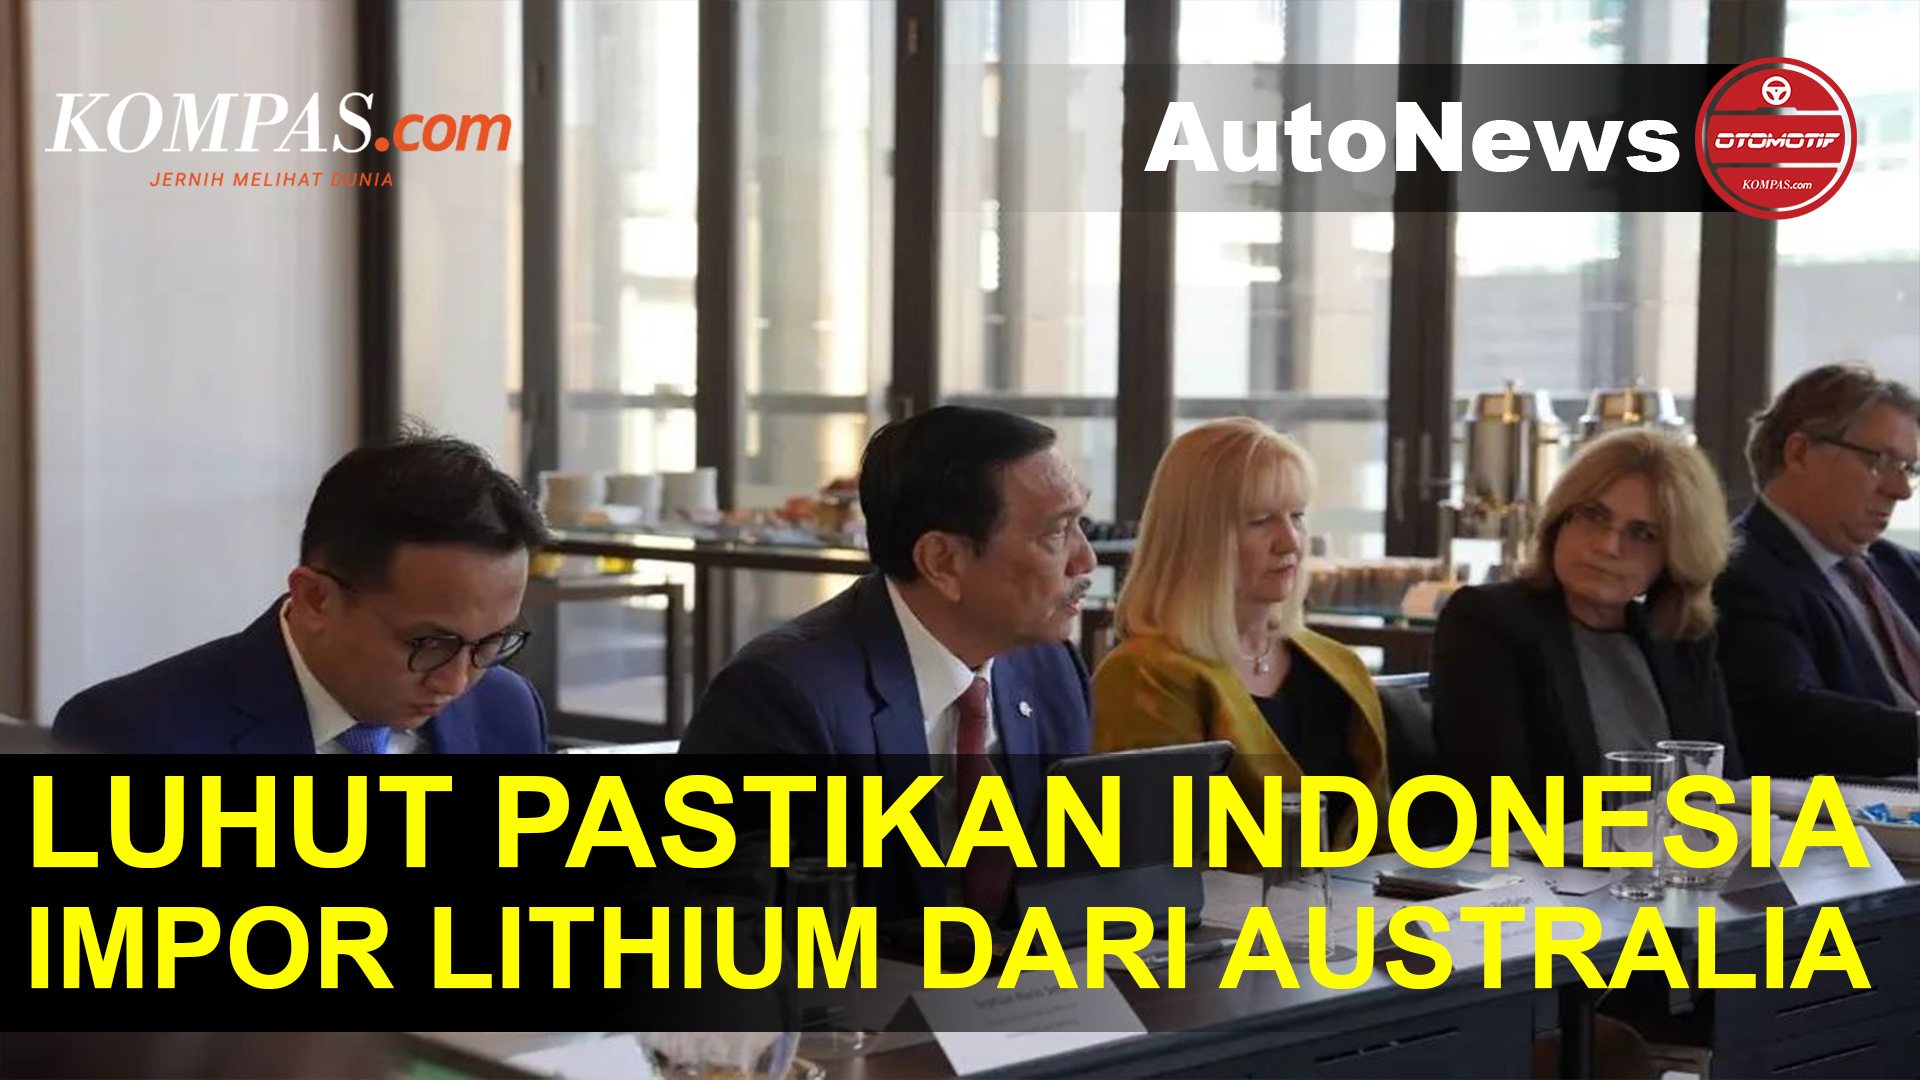 Luhut: Indonesia Impor Lithium dari Australia